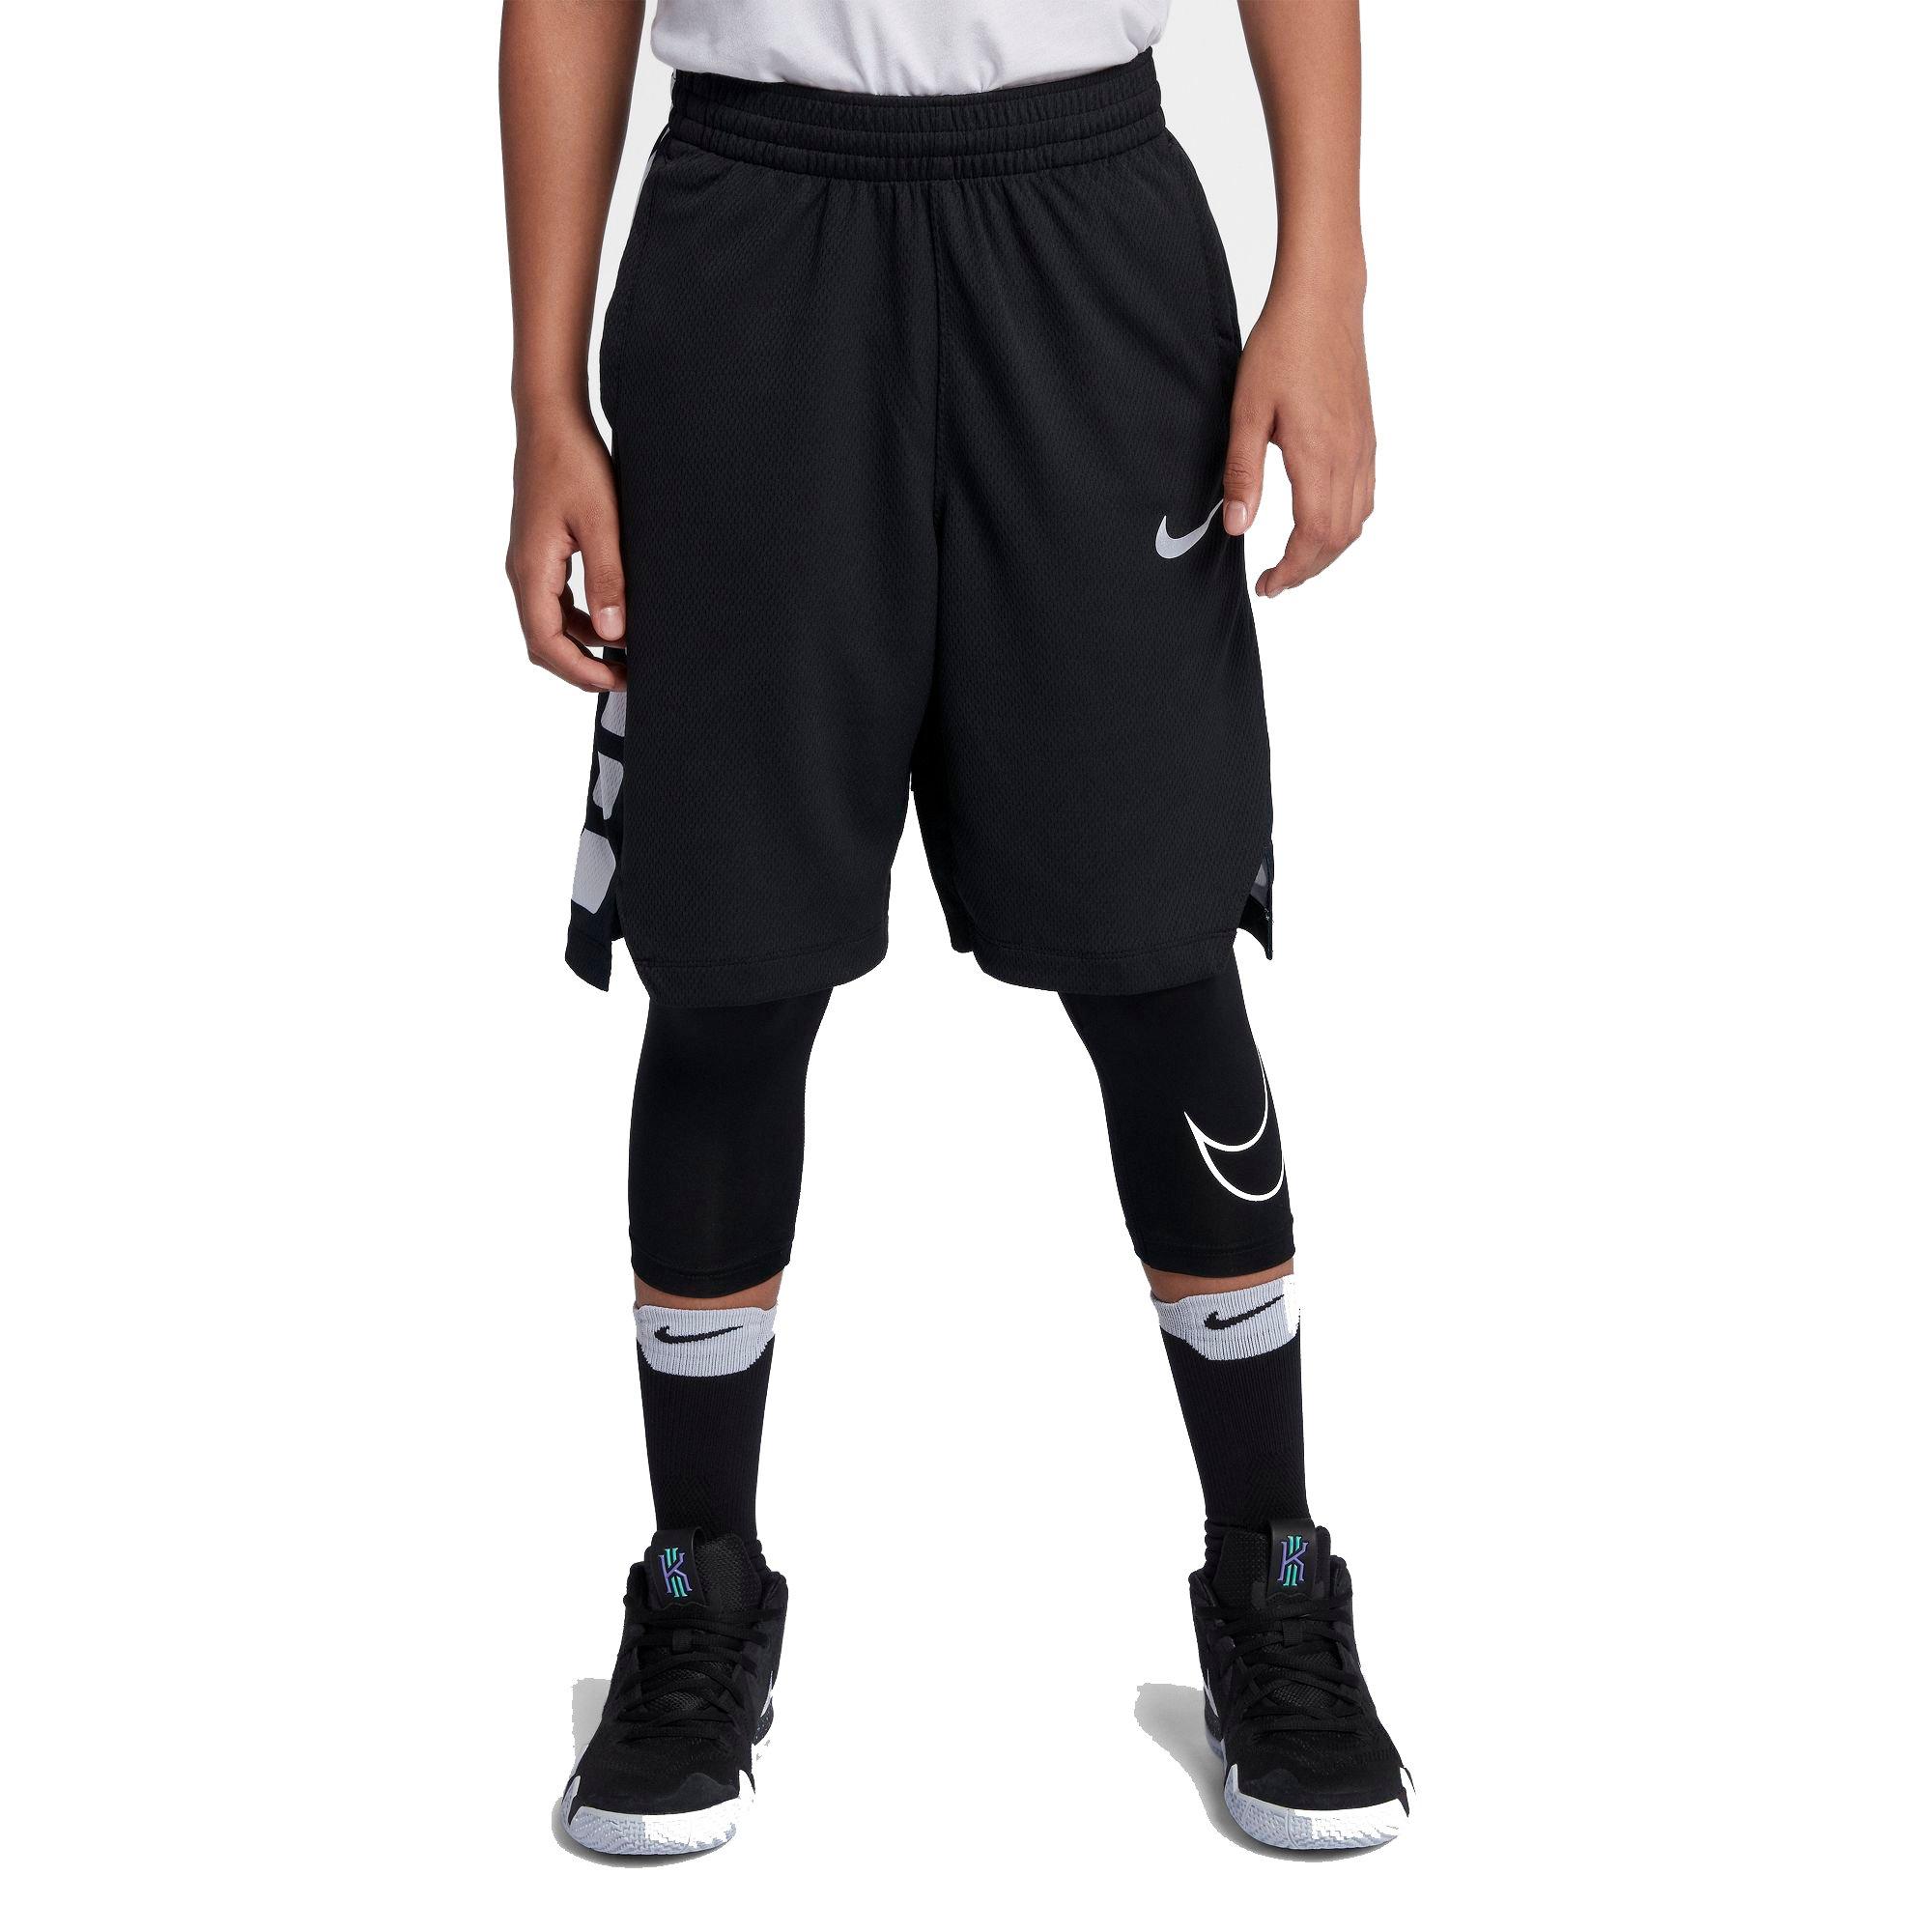 leggings that go under basketball shorts